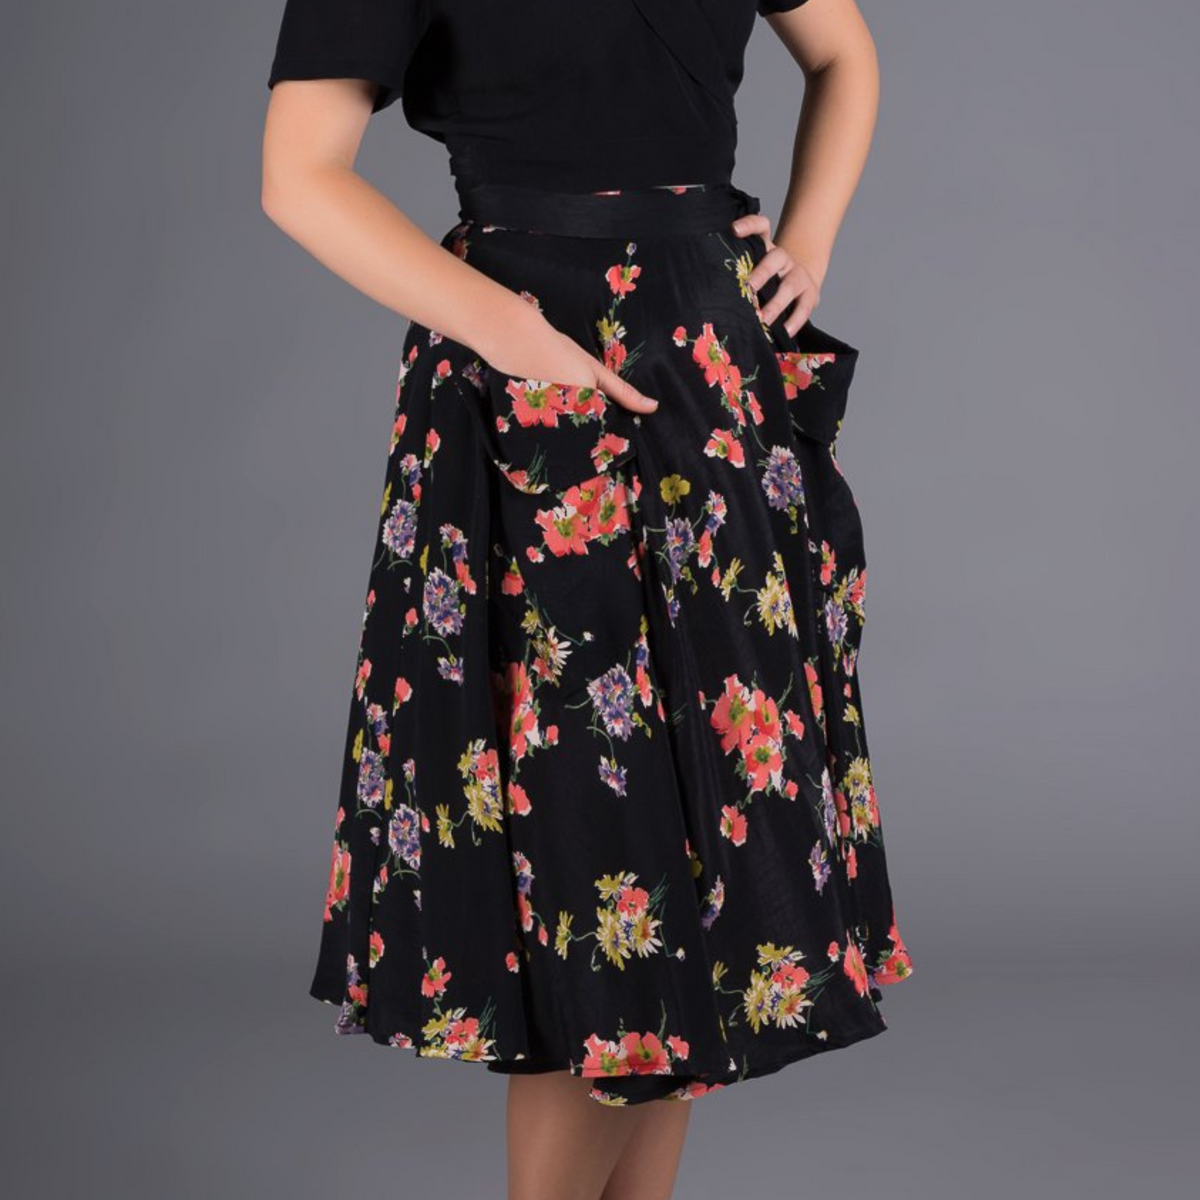 Thelma Skirt in Black Mayflower